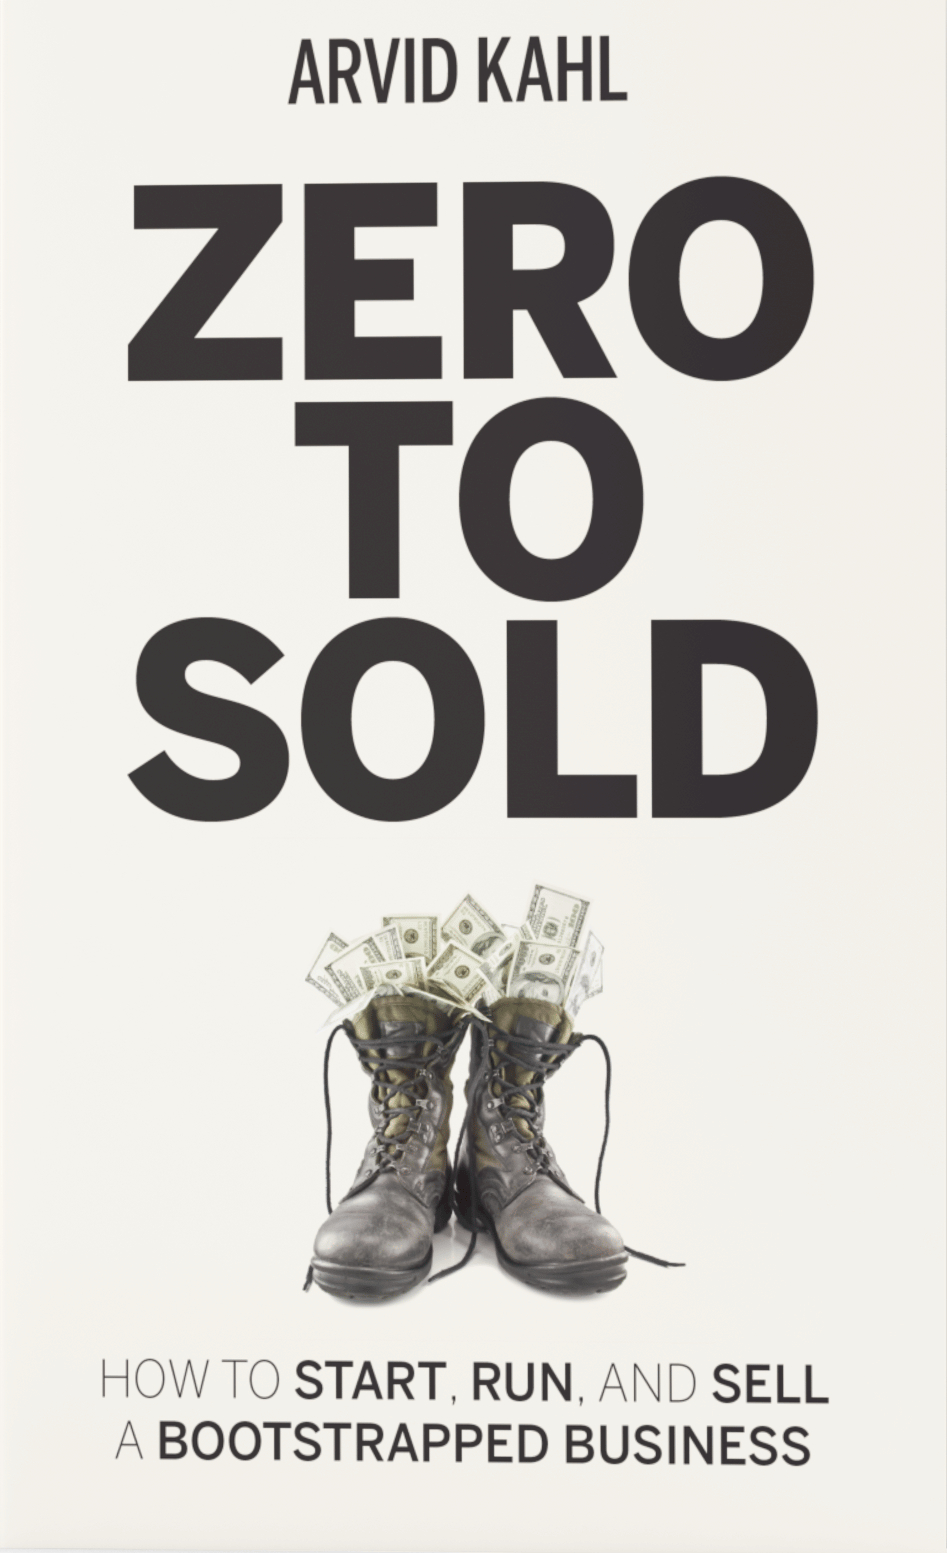 Zero to Sold